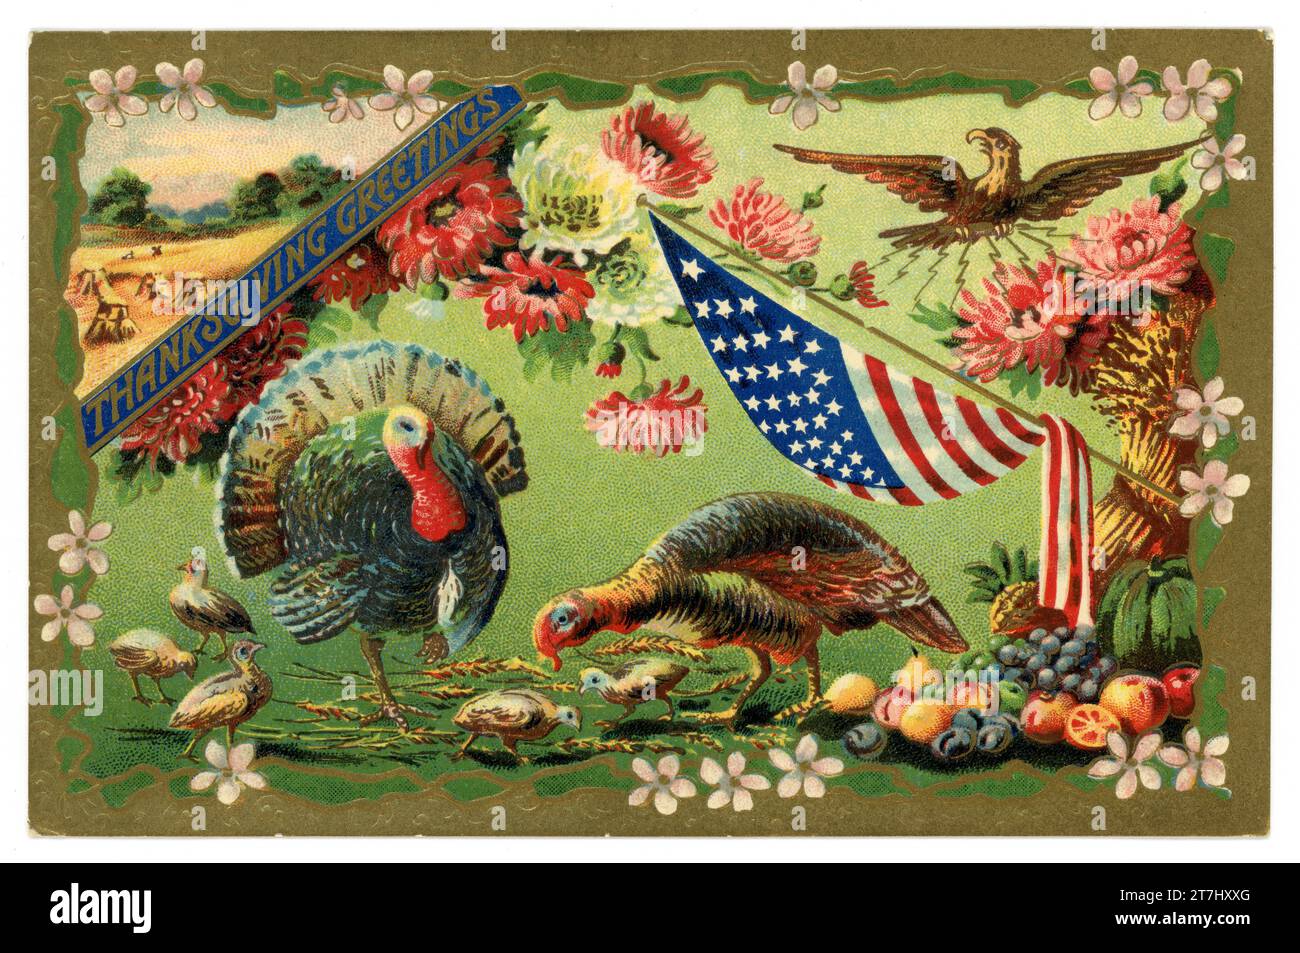 Original et typique à l'ancienne, belle carte postale en relief de l'American Thanksgiving Day turquie, étoiles et rayures, aigle, avec une bordure d'or. Daté vers 1911, États-Unis Banque D'Images